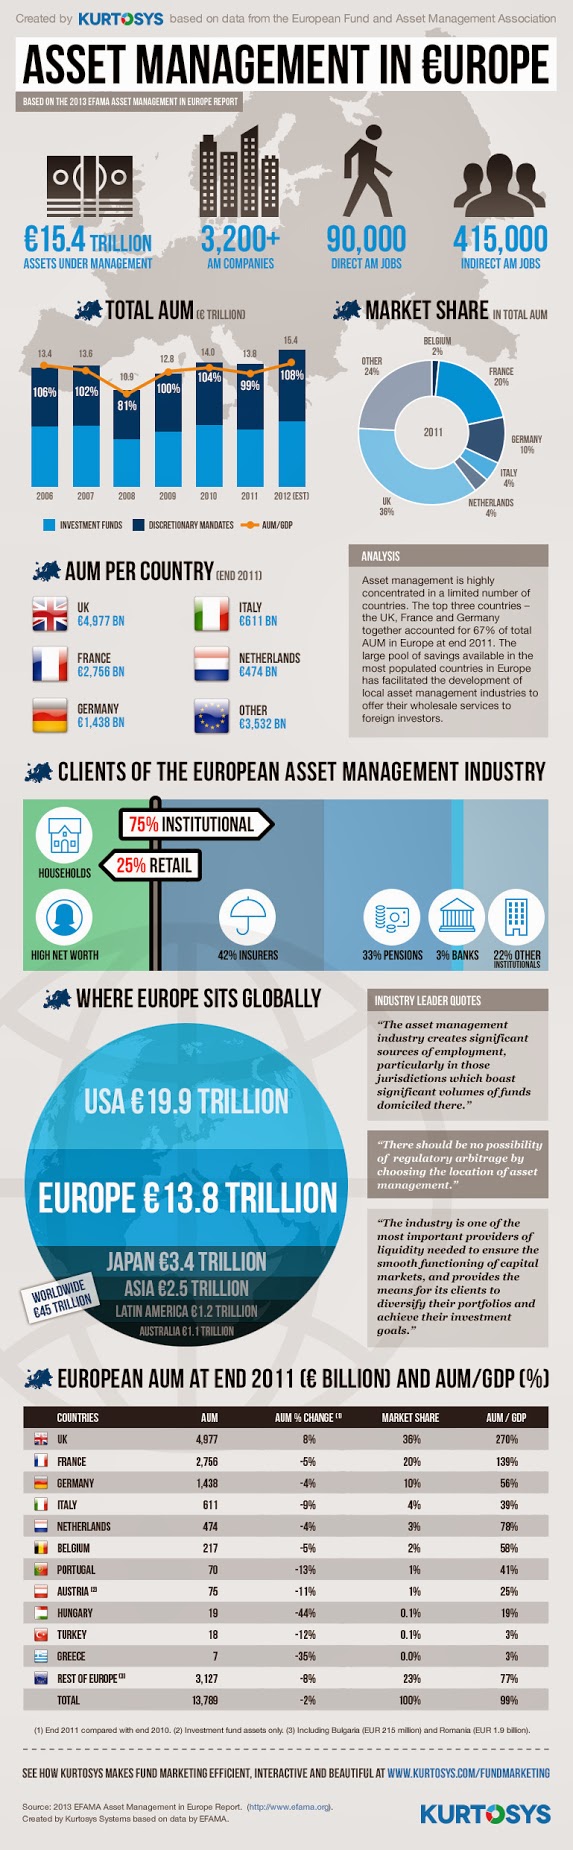 European Asset management